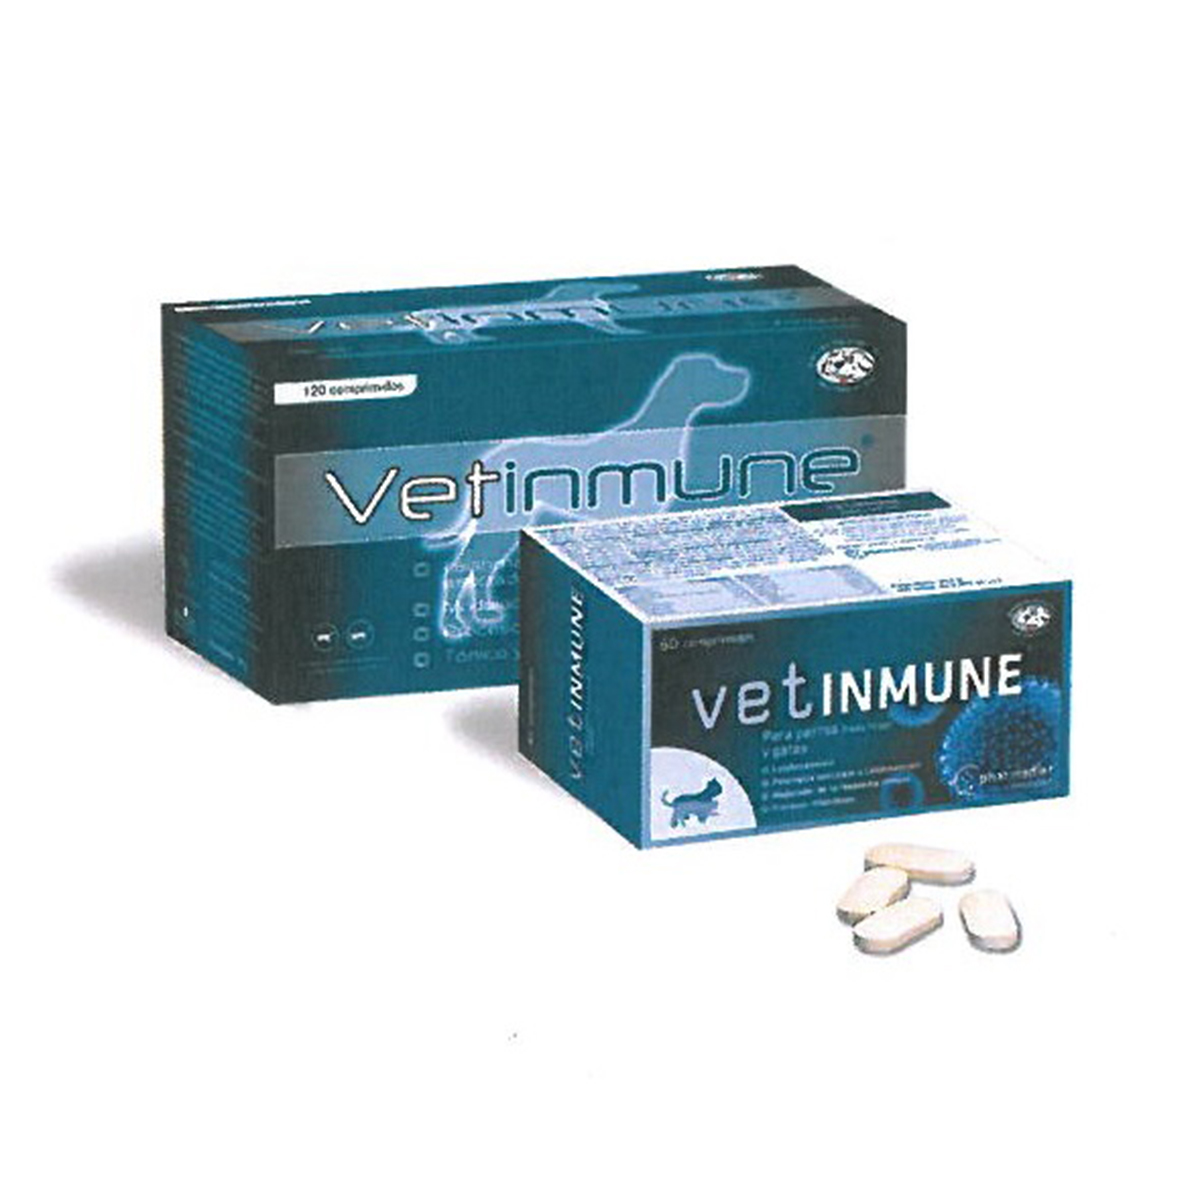 Vetinmune 120 tablete Farmadiet